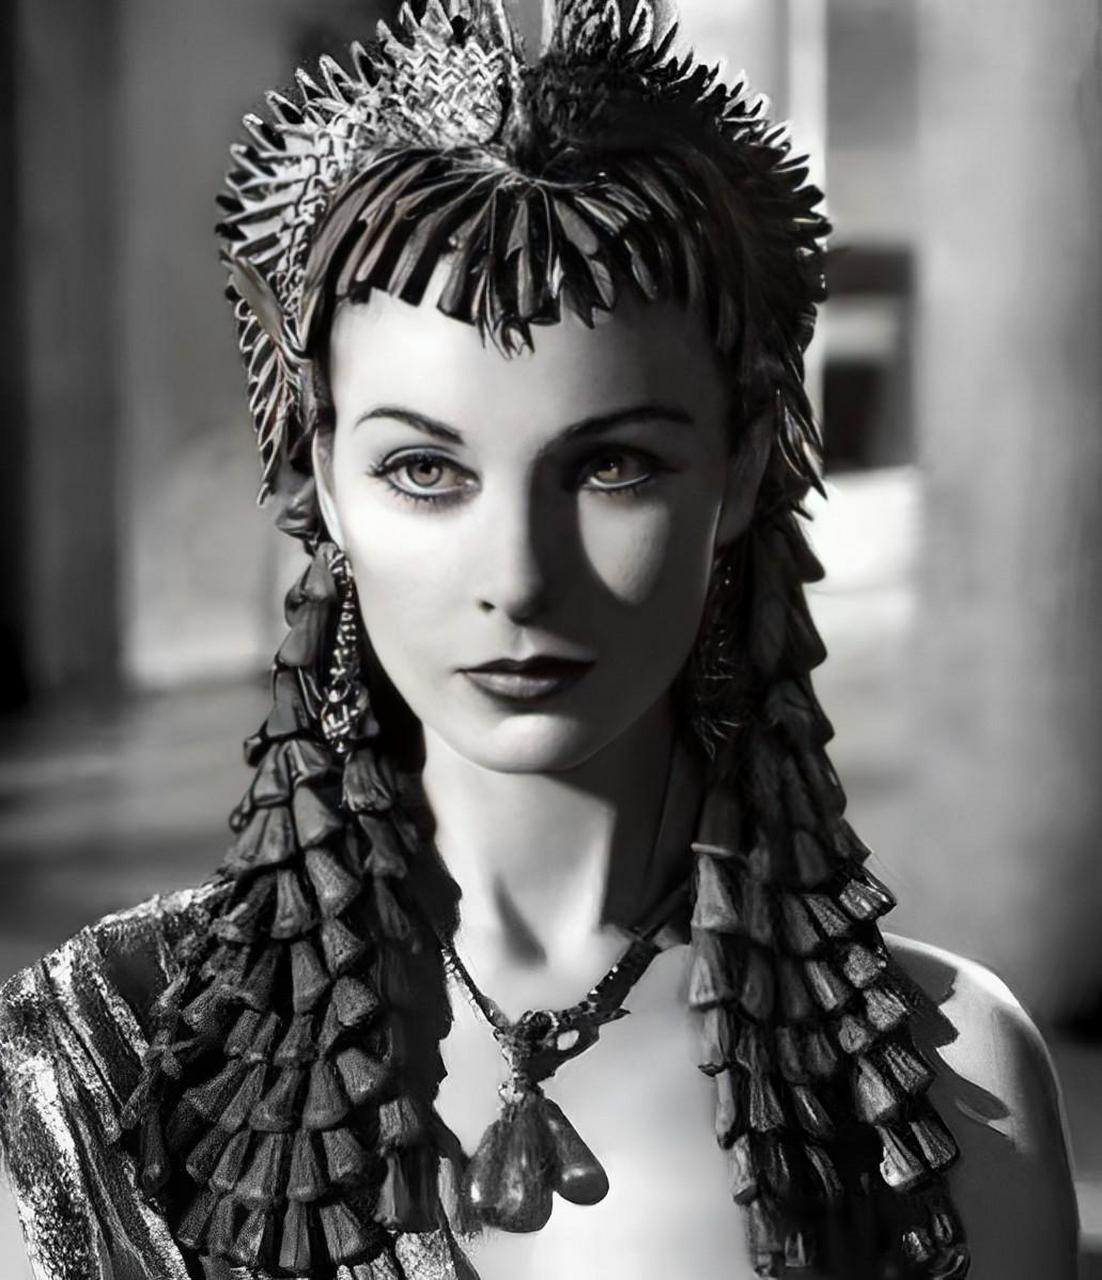 伊朗末代皇后法丝亚,在此之前她本是埃及公主,照片中不难看出她非常